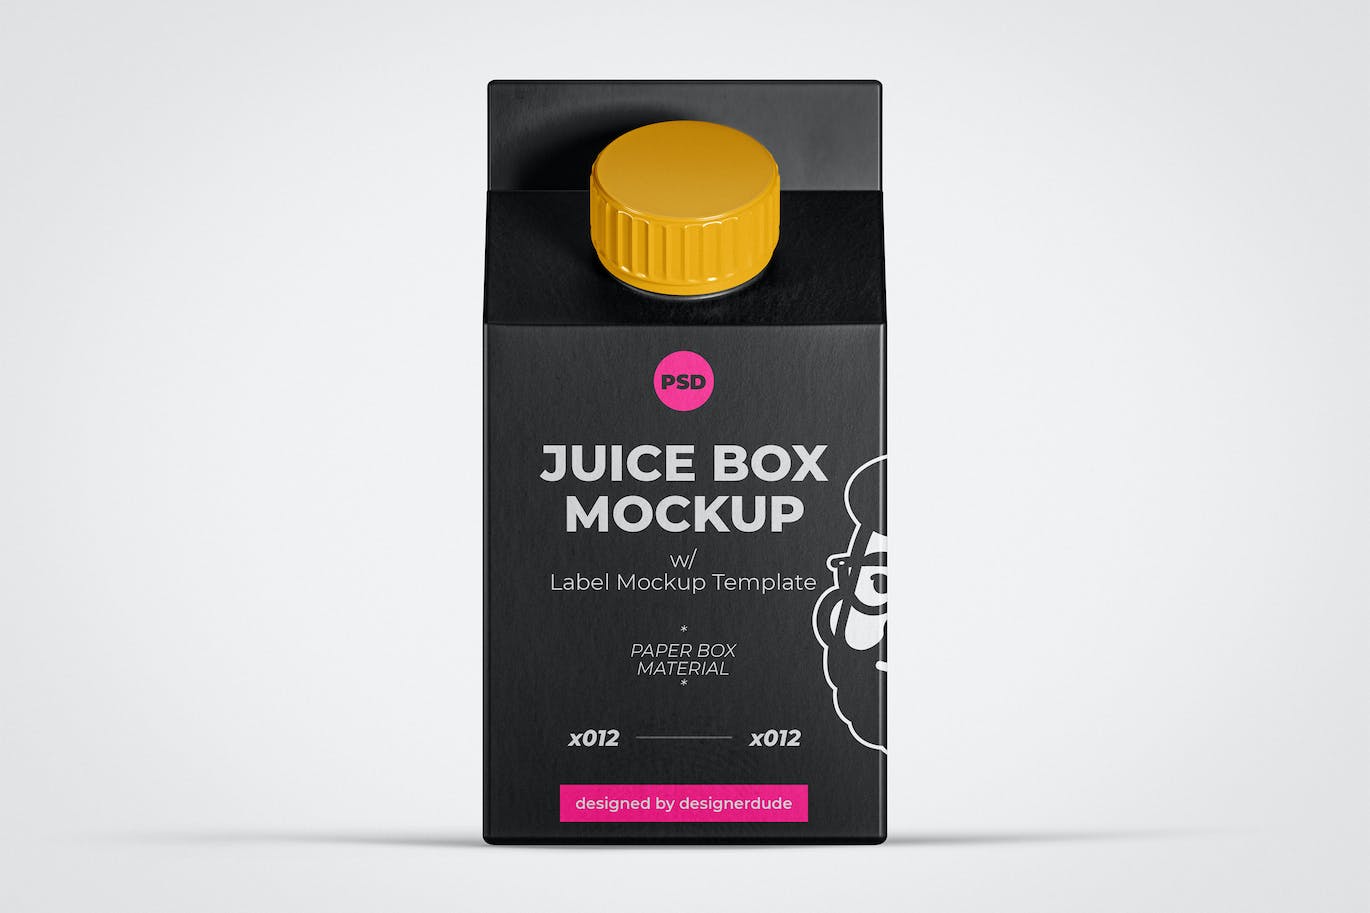 果汁盒外观包装设计样机模板 Juice Box Mockup Template 样机素材 第1张